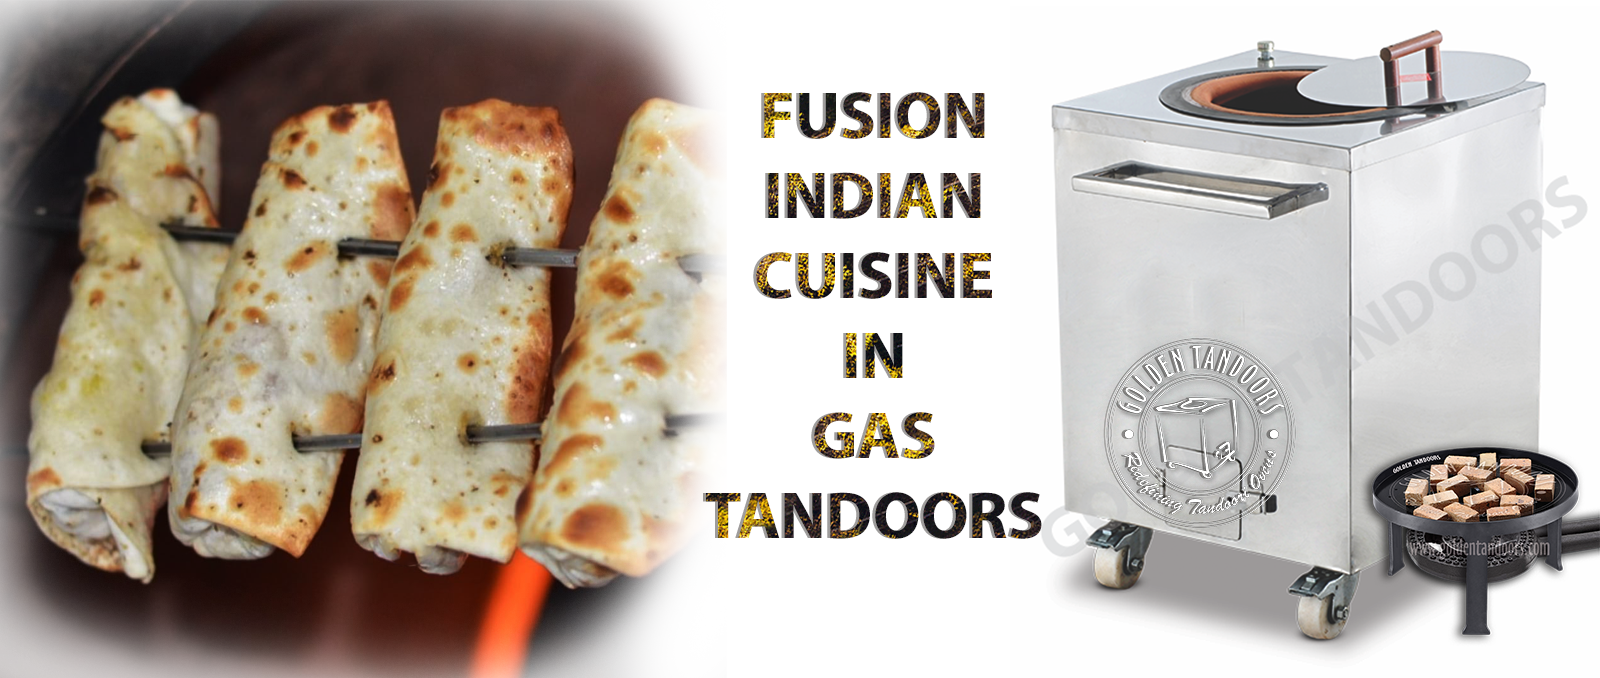 Tandoor fusion cuisine